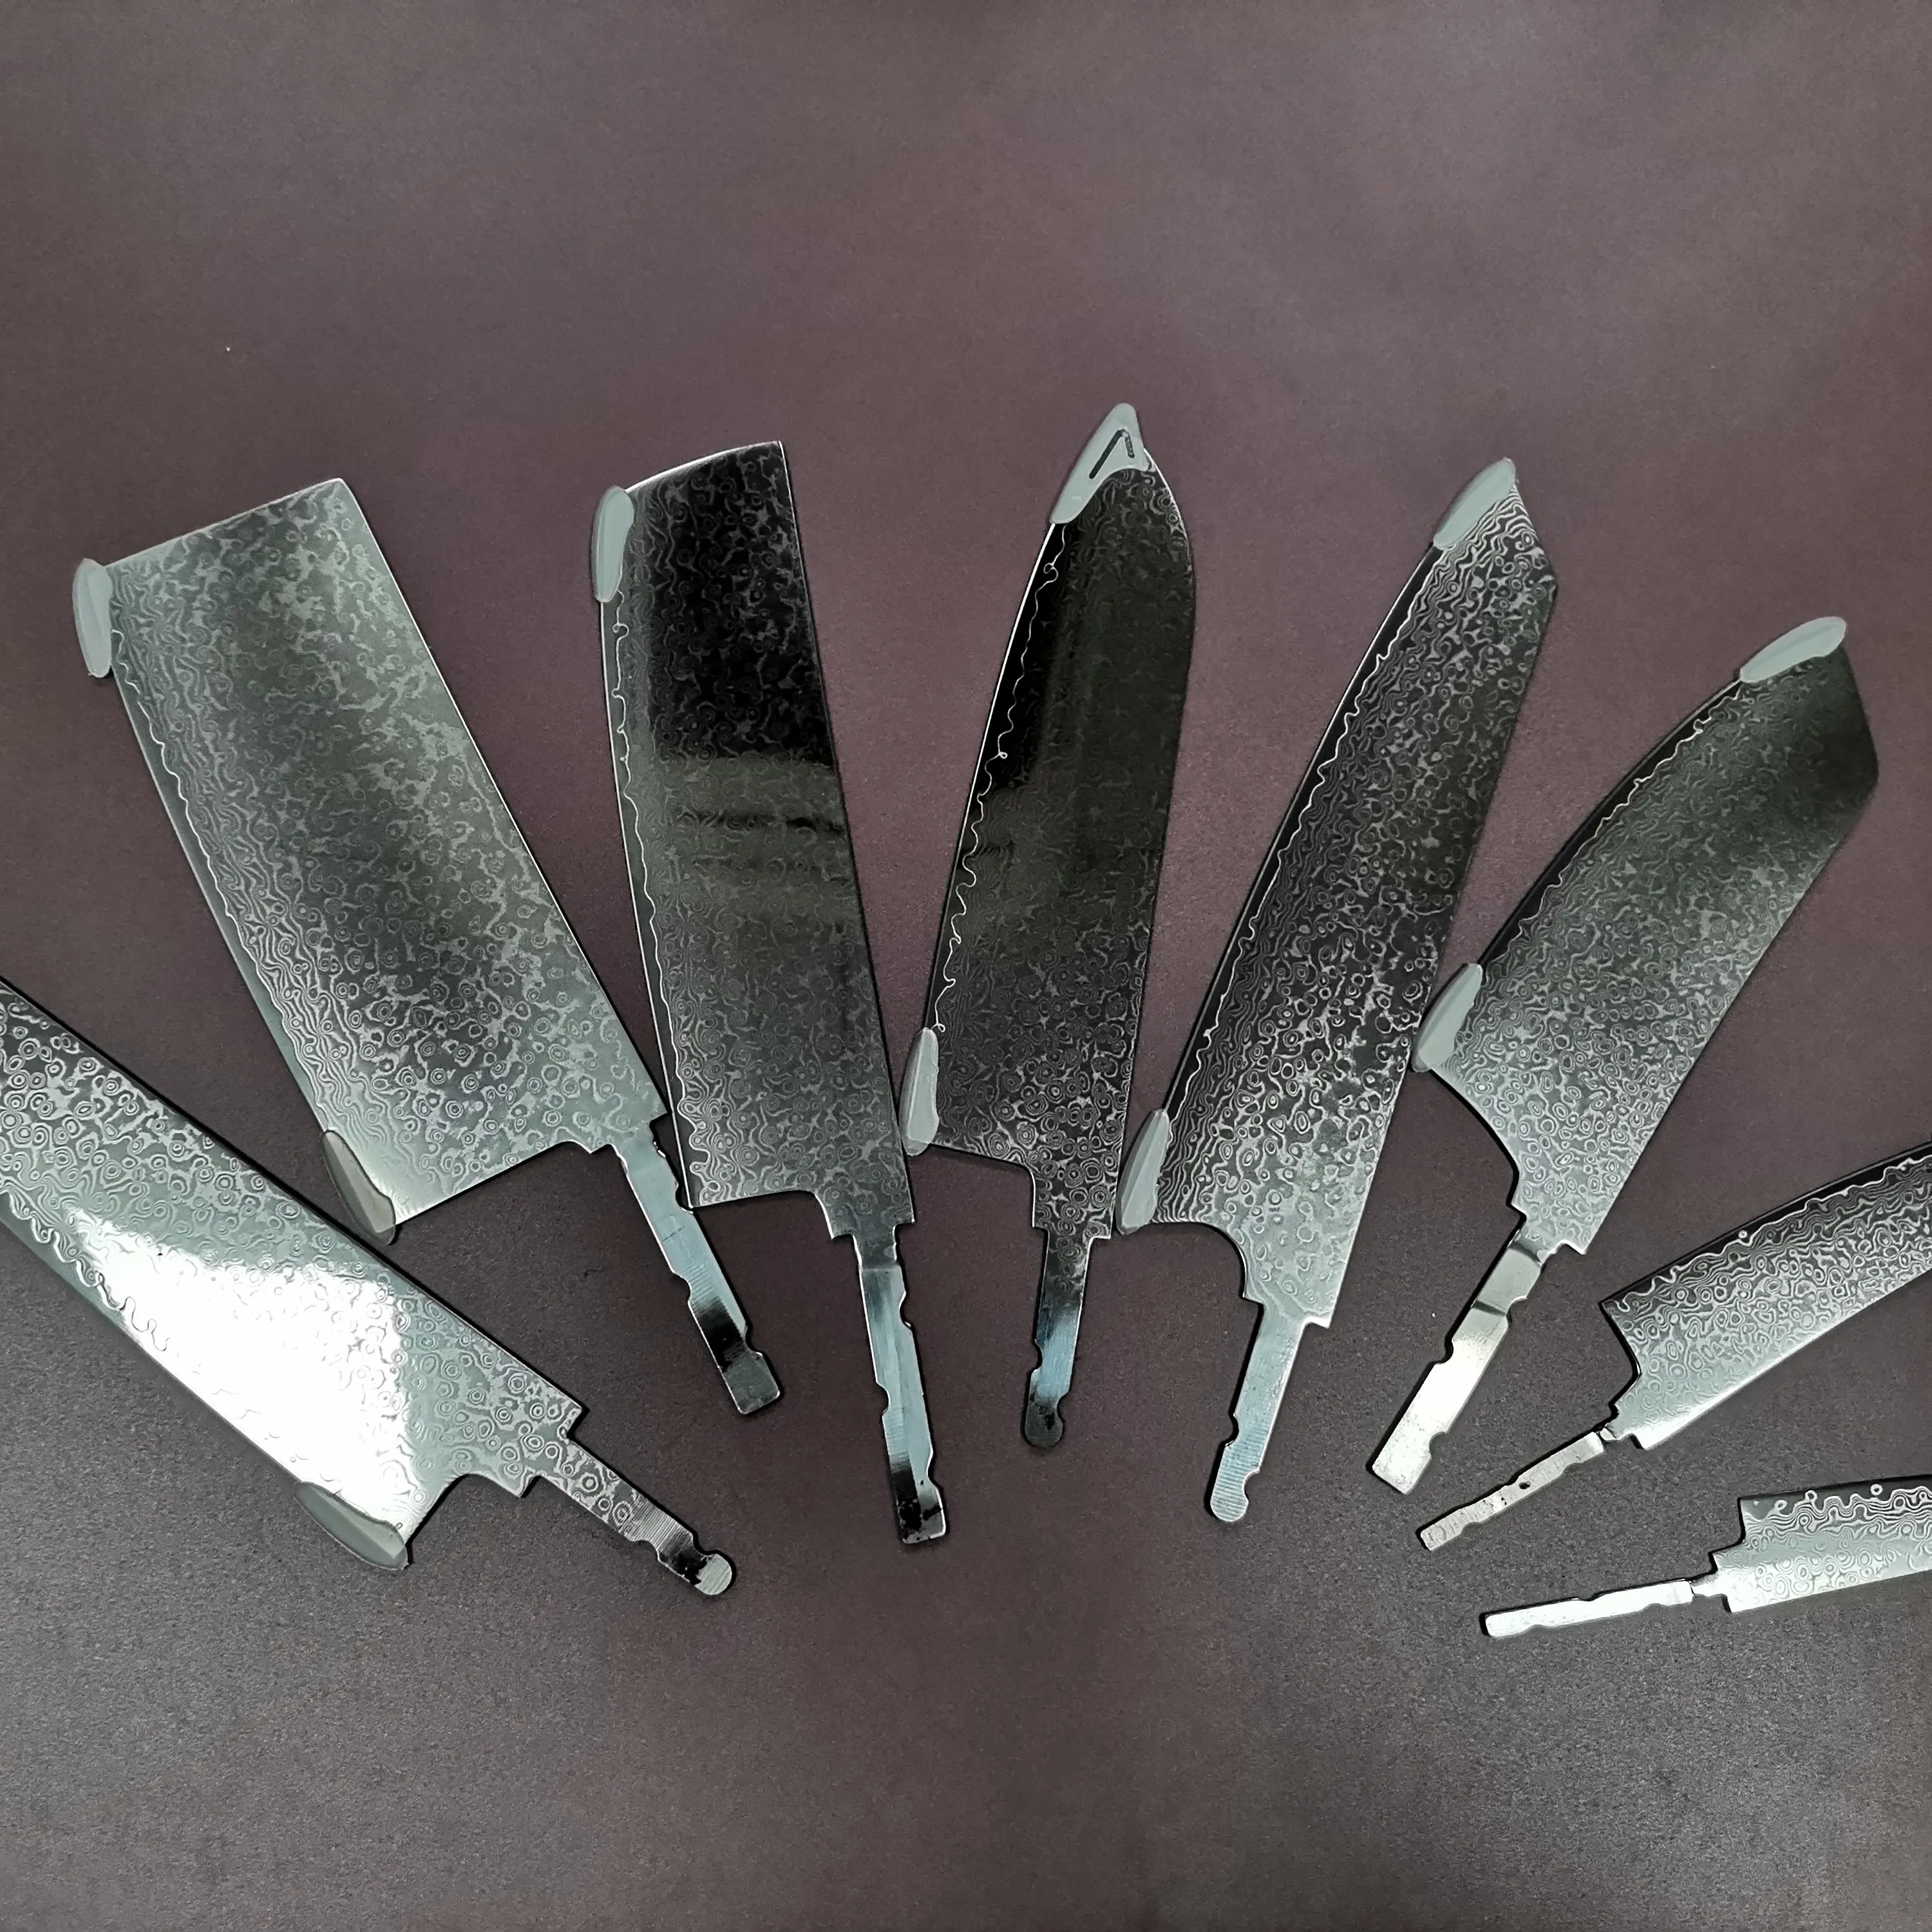 الصين مصنع الميمون سحابة Vg10 المطبخ دمشق شفرة سكين كيت كامل تانغ OEM فارغة شفرة